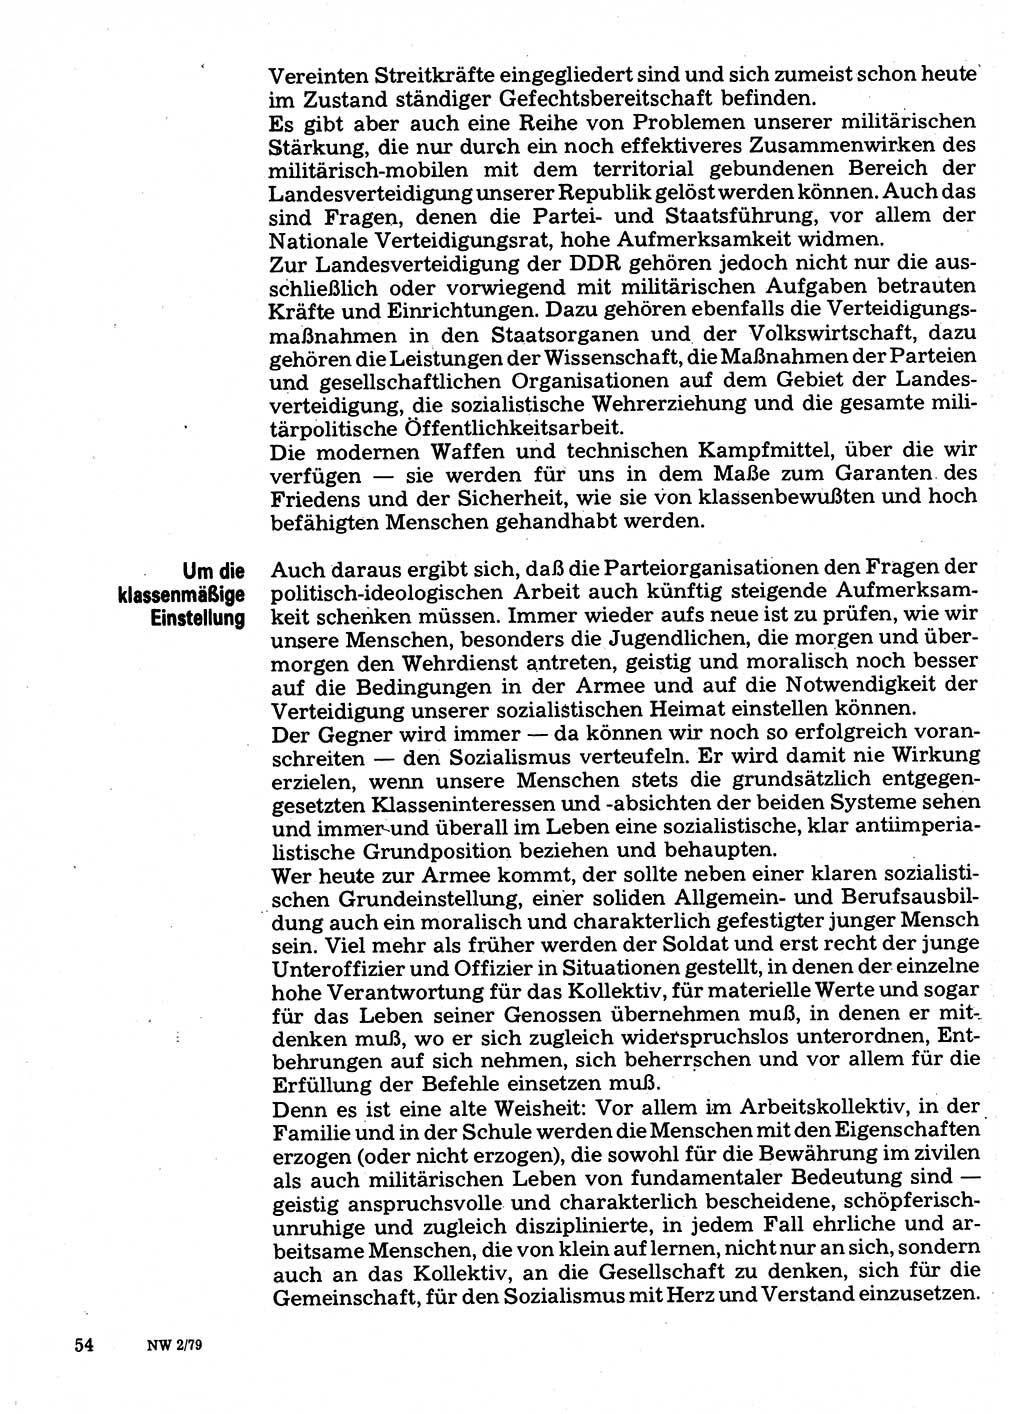 Neuer Weg (NW), Organ des Zentralkomitees (ZK) der SED (Sozialistische Einheitspartei Deutschlands) für Fragen des Parteilebens, 34. Jahrgang [Deutsche Demokratische Republik (DDR)] 1979, Seite 54 (NW ZK SED DDR 1979, S. 54)